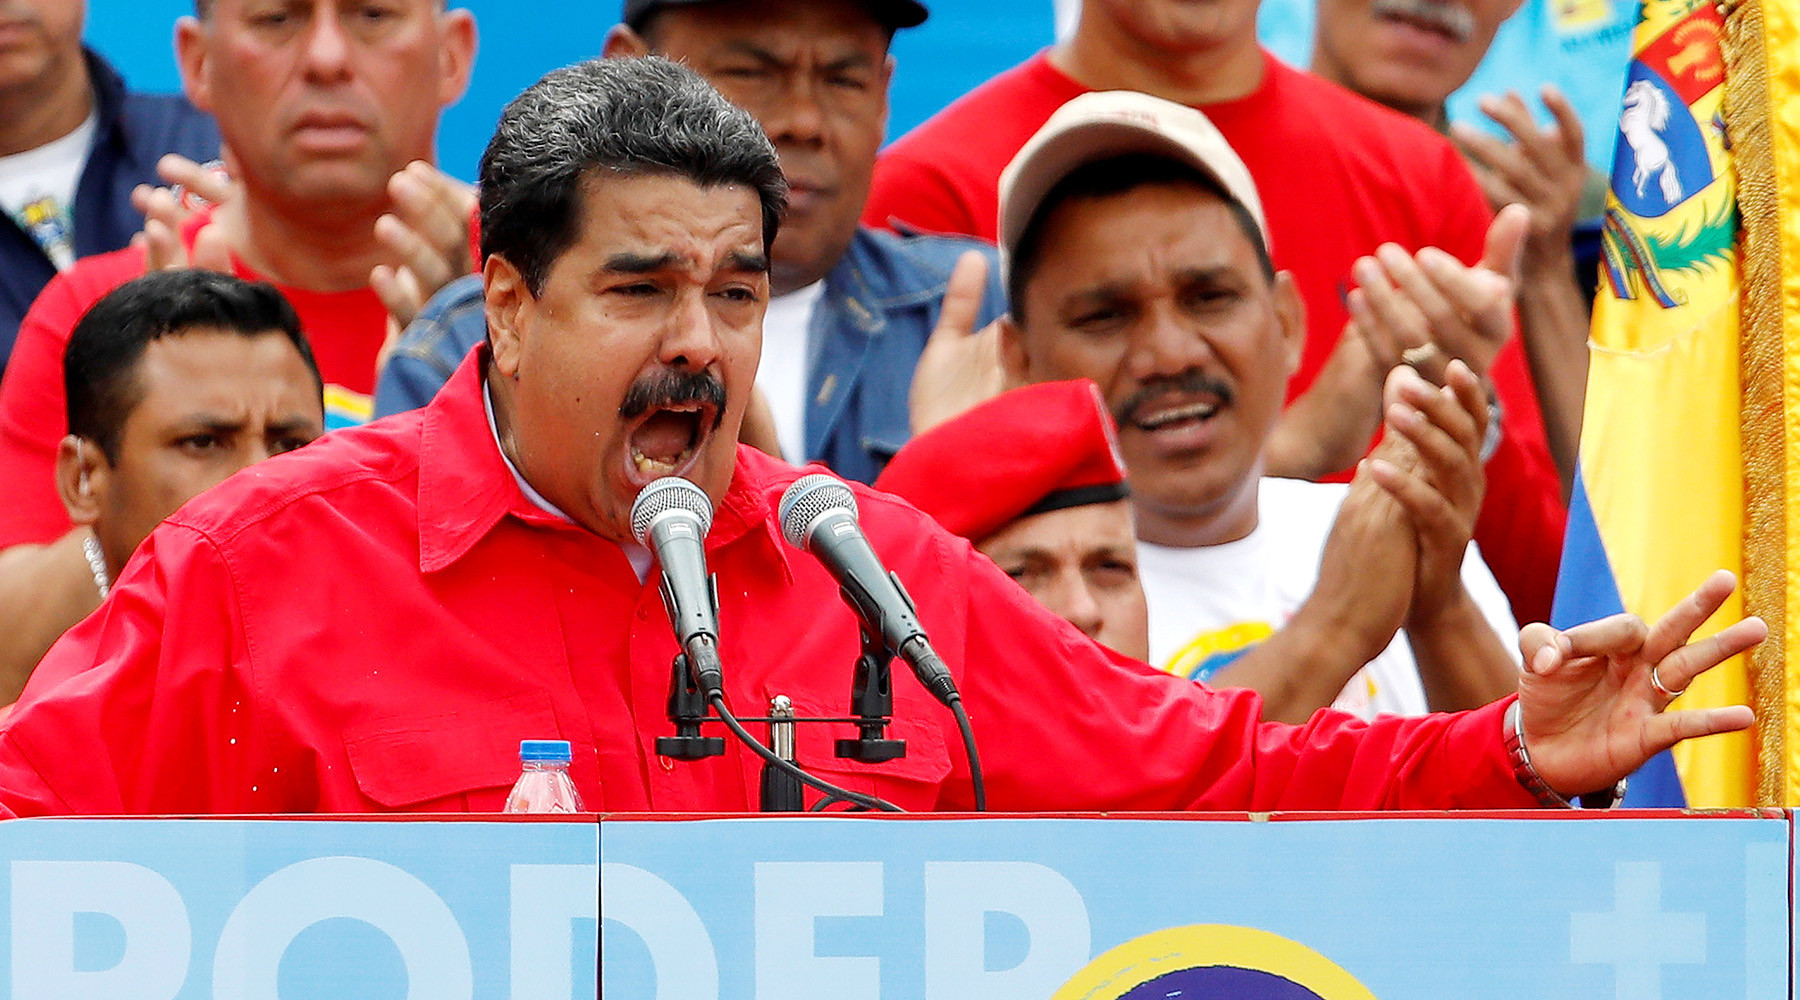 Конфликт между президентом и парламентом уничтожает Венесуэлу 